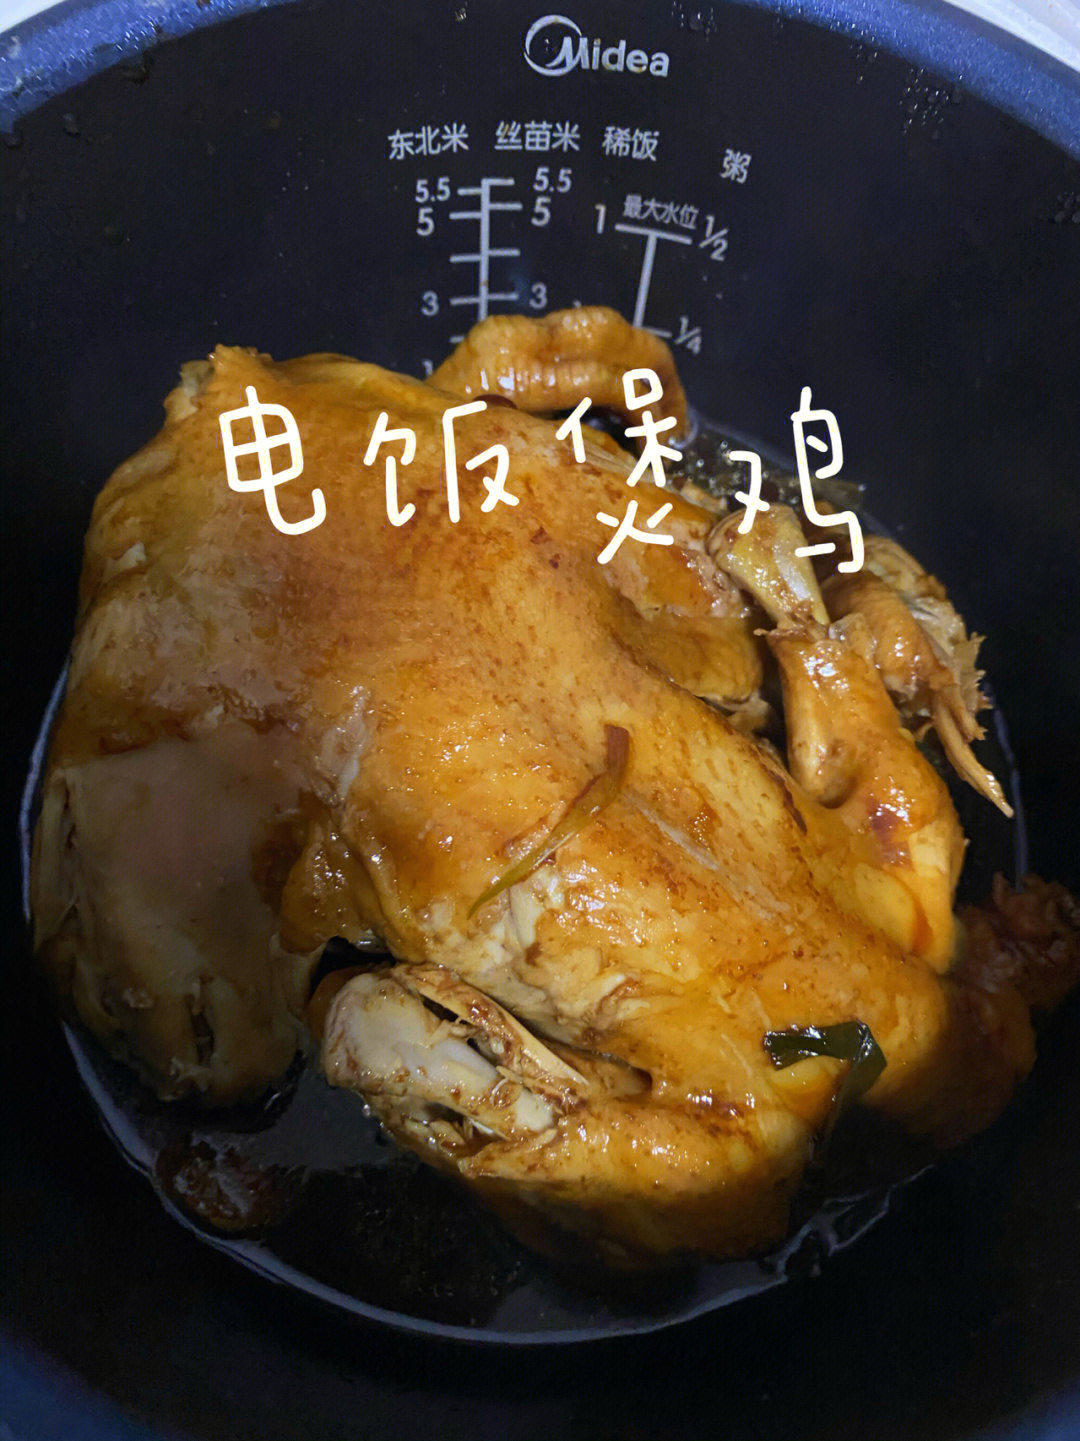 电饭锅炖鸡汤图片